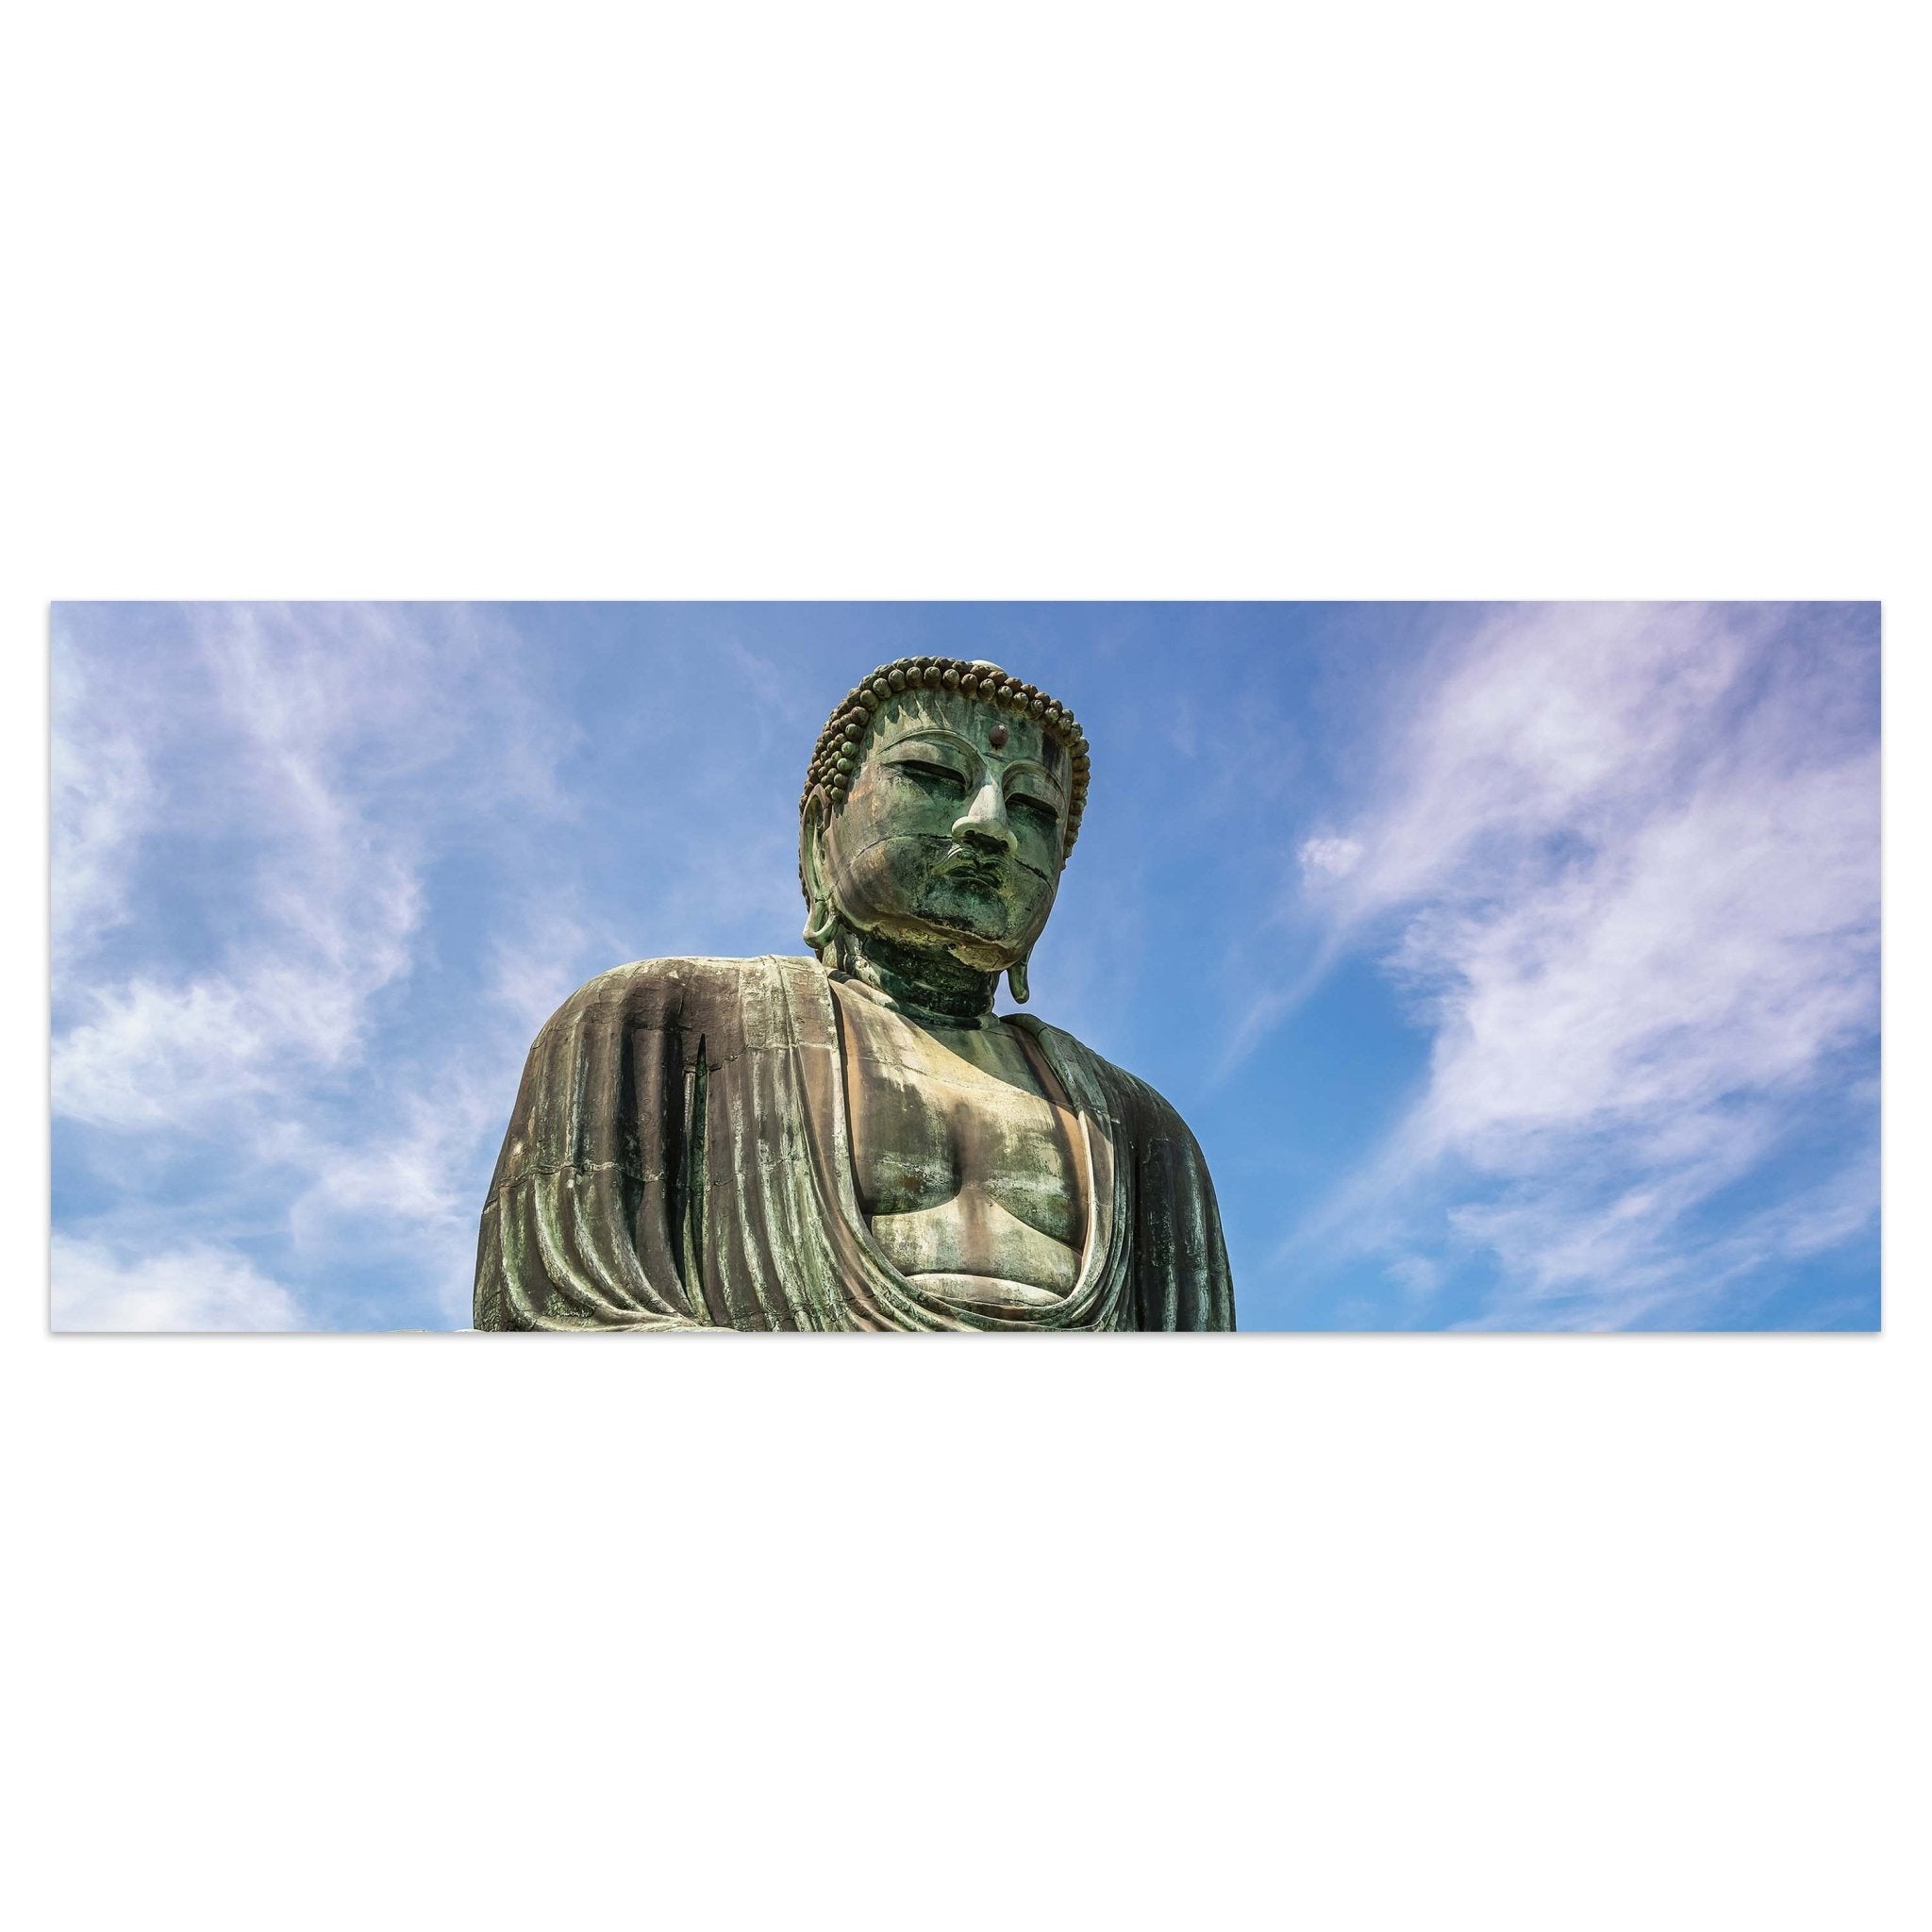 Leinwandbild Der Große Buddha von Kamakura M0973 kaufen - Bild 1